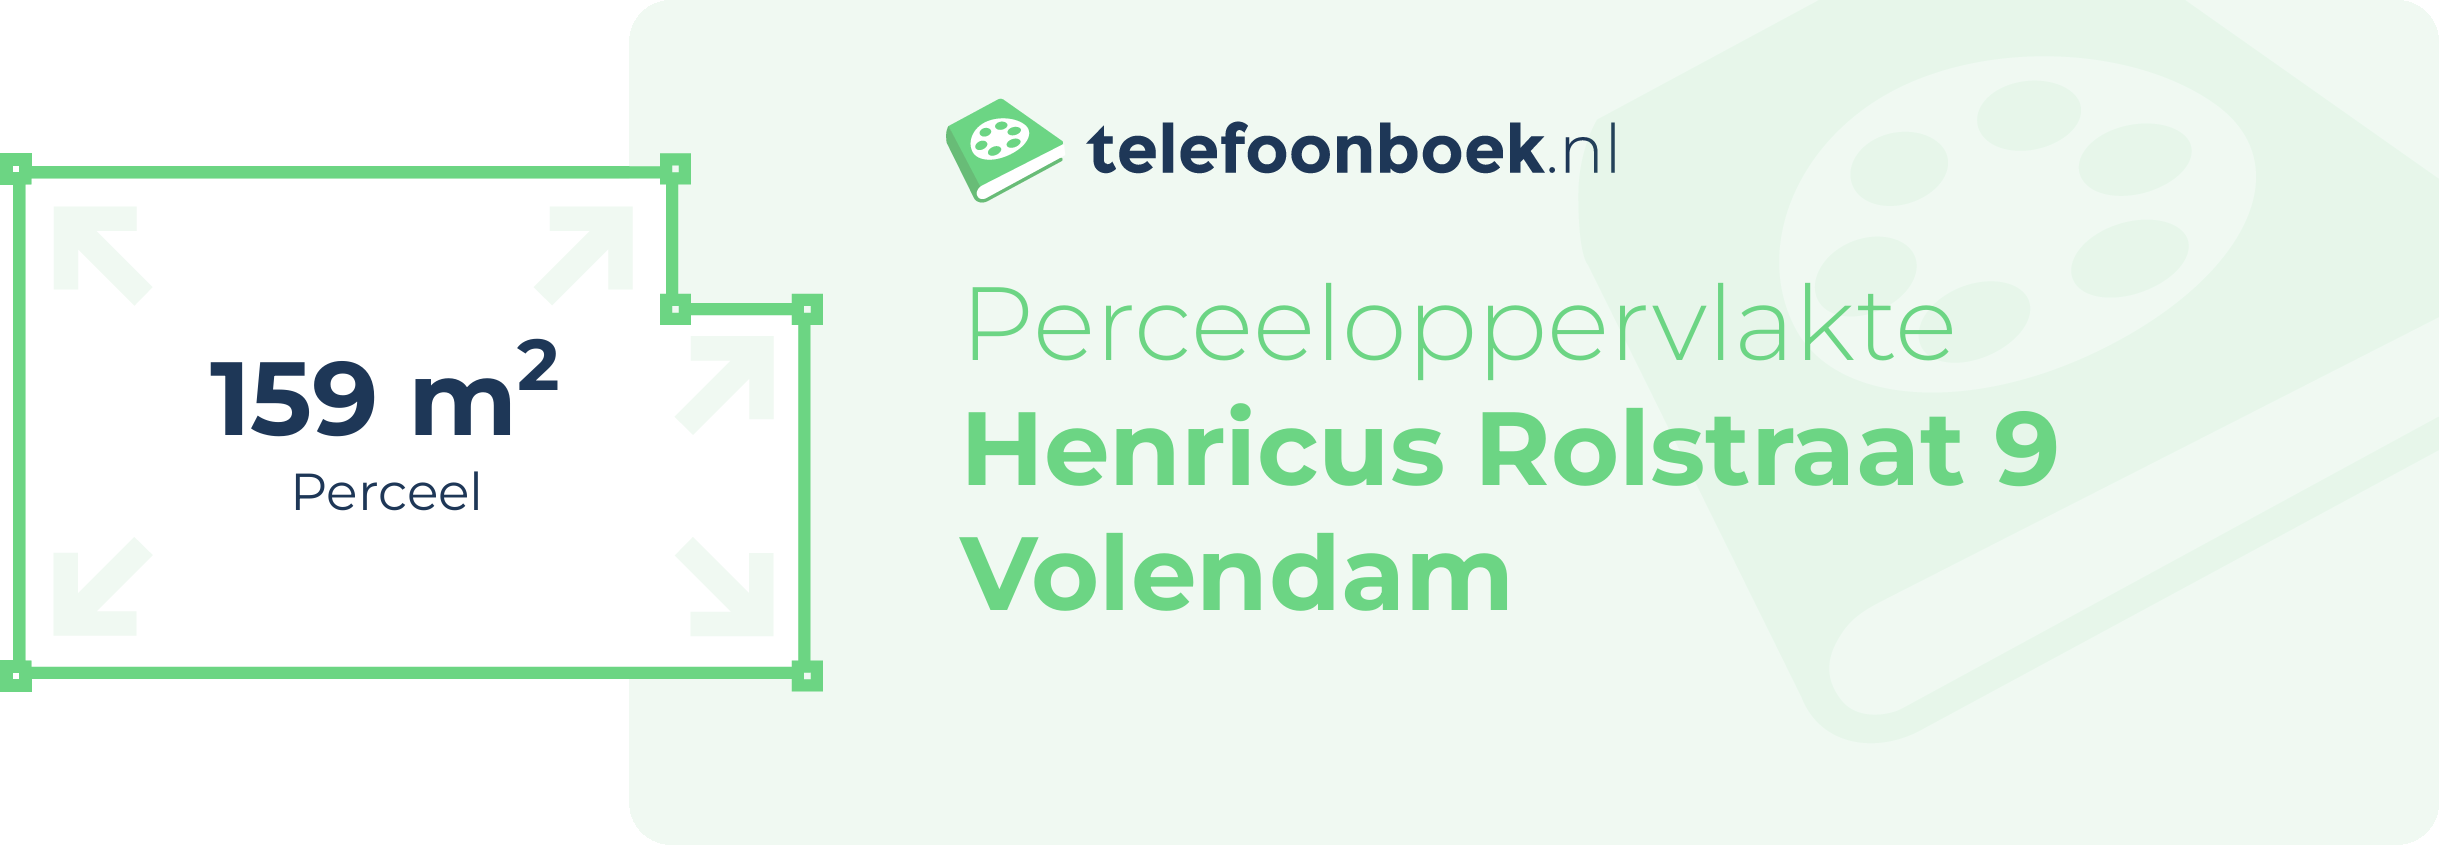 Perceeloppervlakte Henricus Rolstraat 9 Volendam